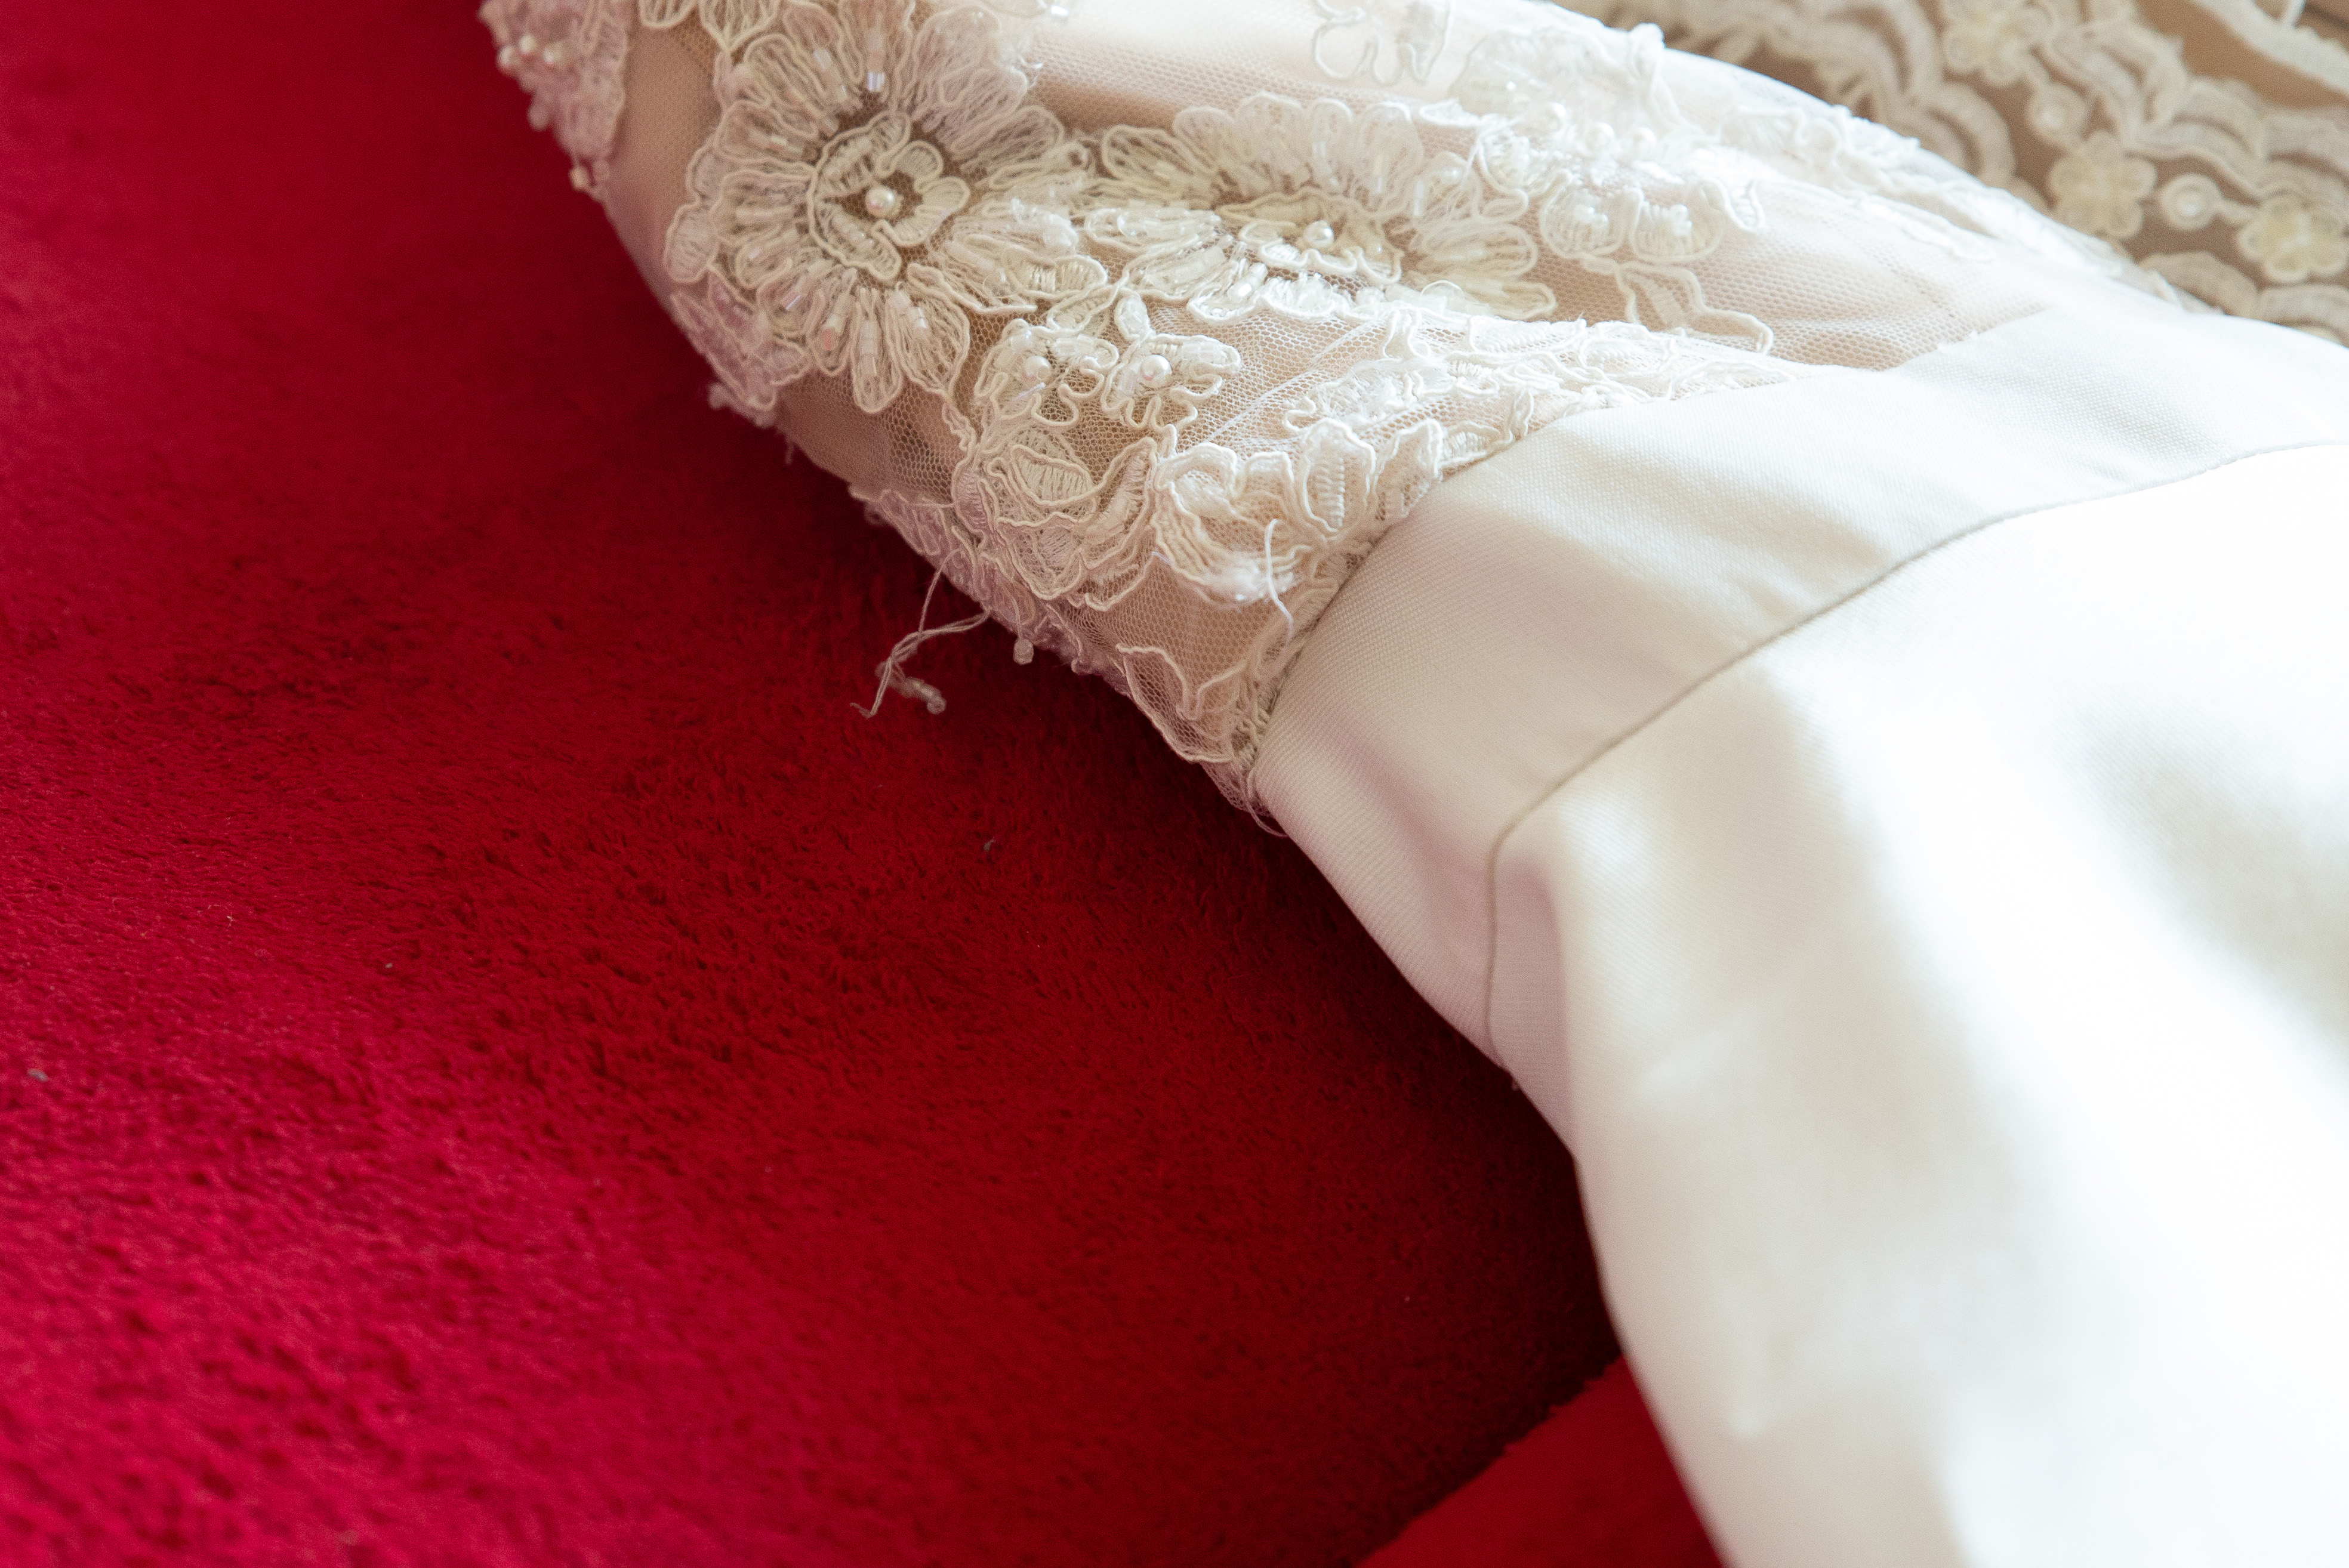 A close-up shot of a ripped wedding dress | Source: Shutterstock